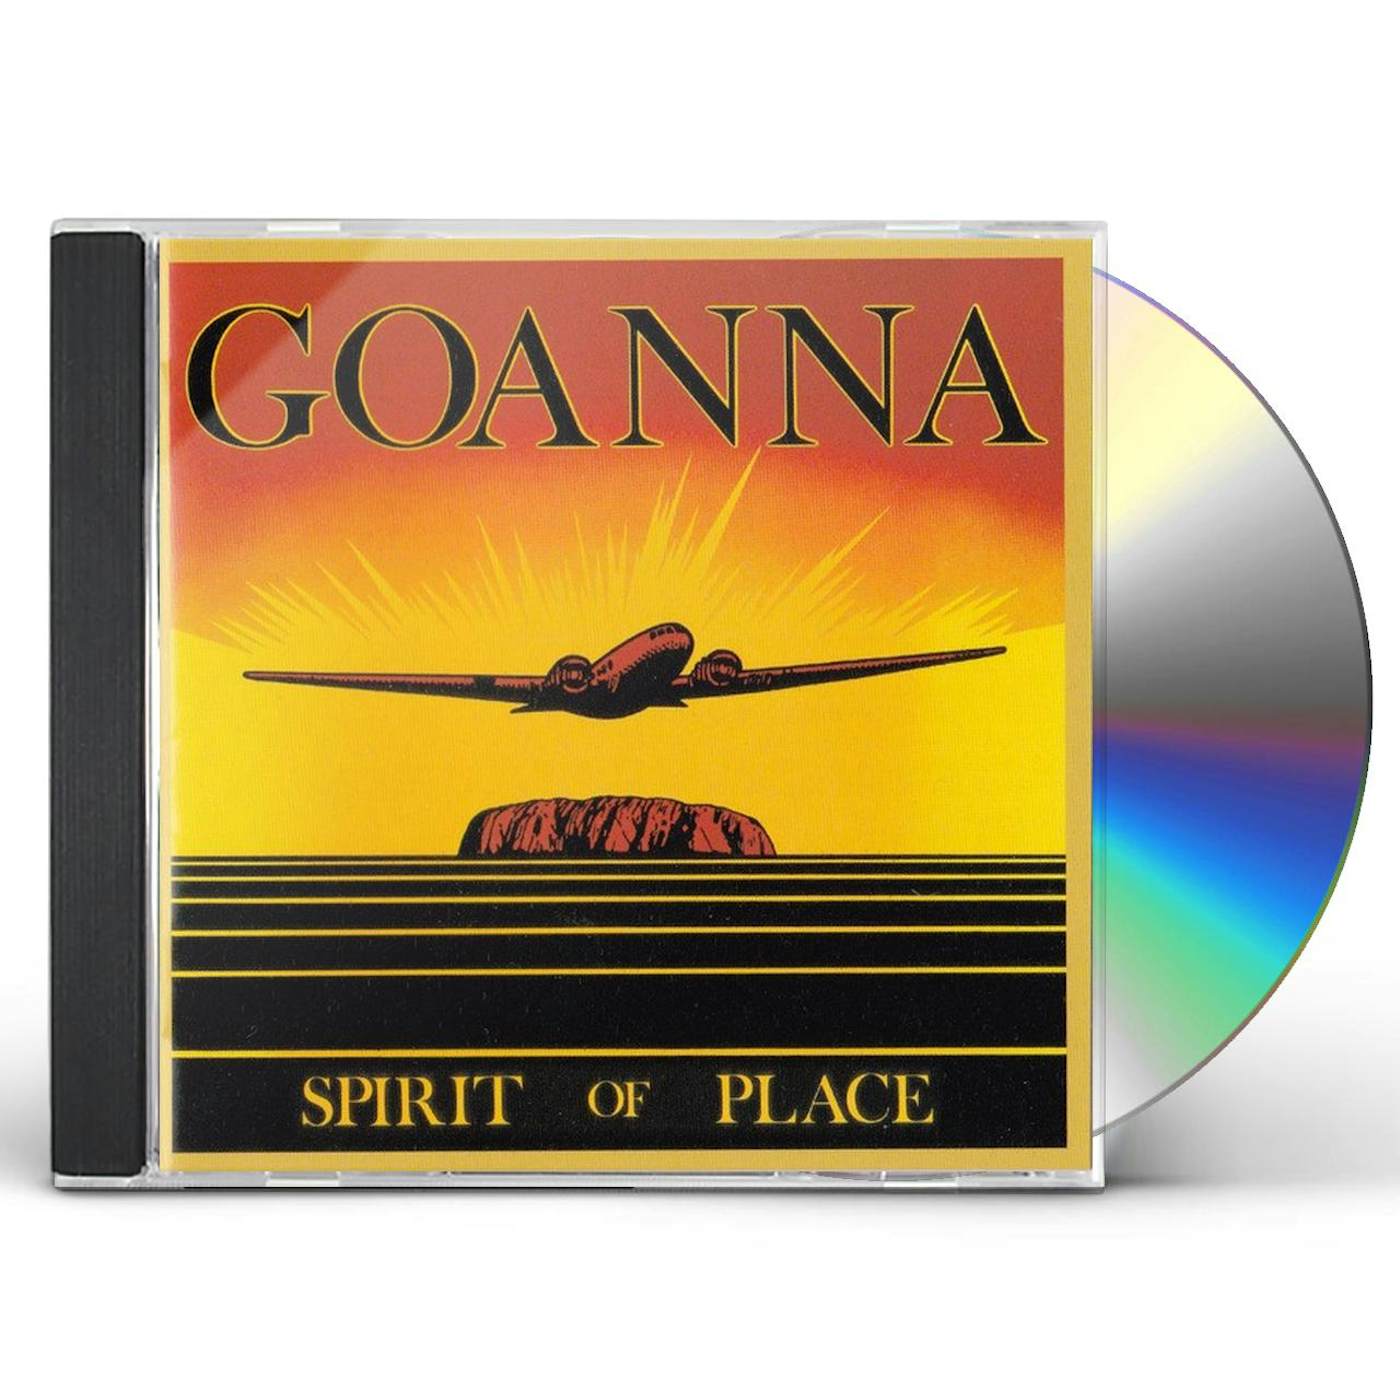 Goanna SPIRIT OF PLACE CD